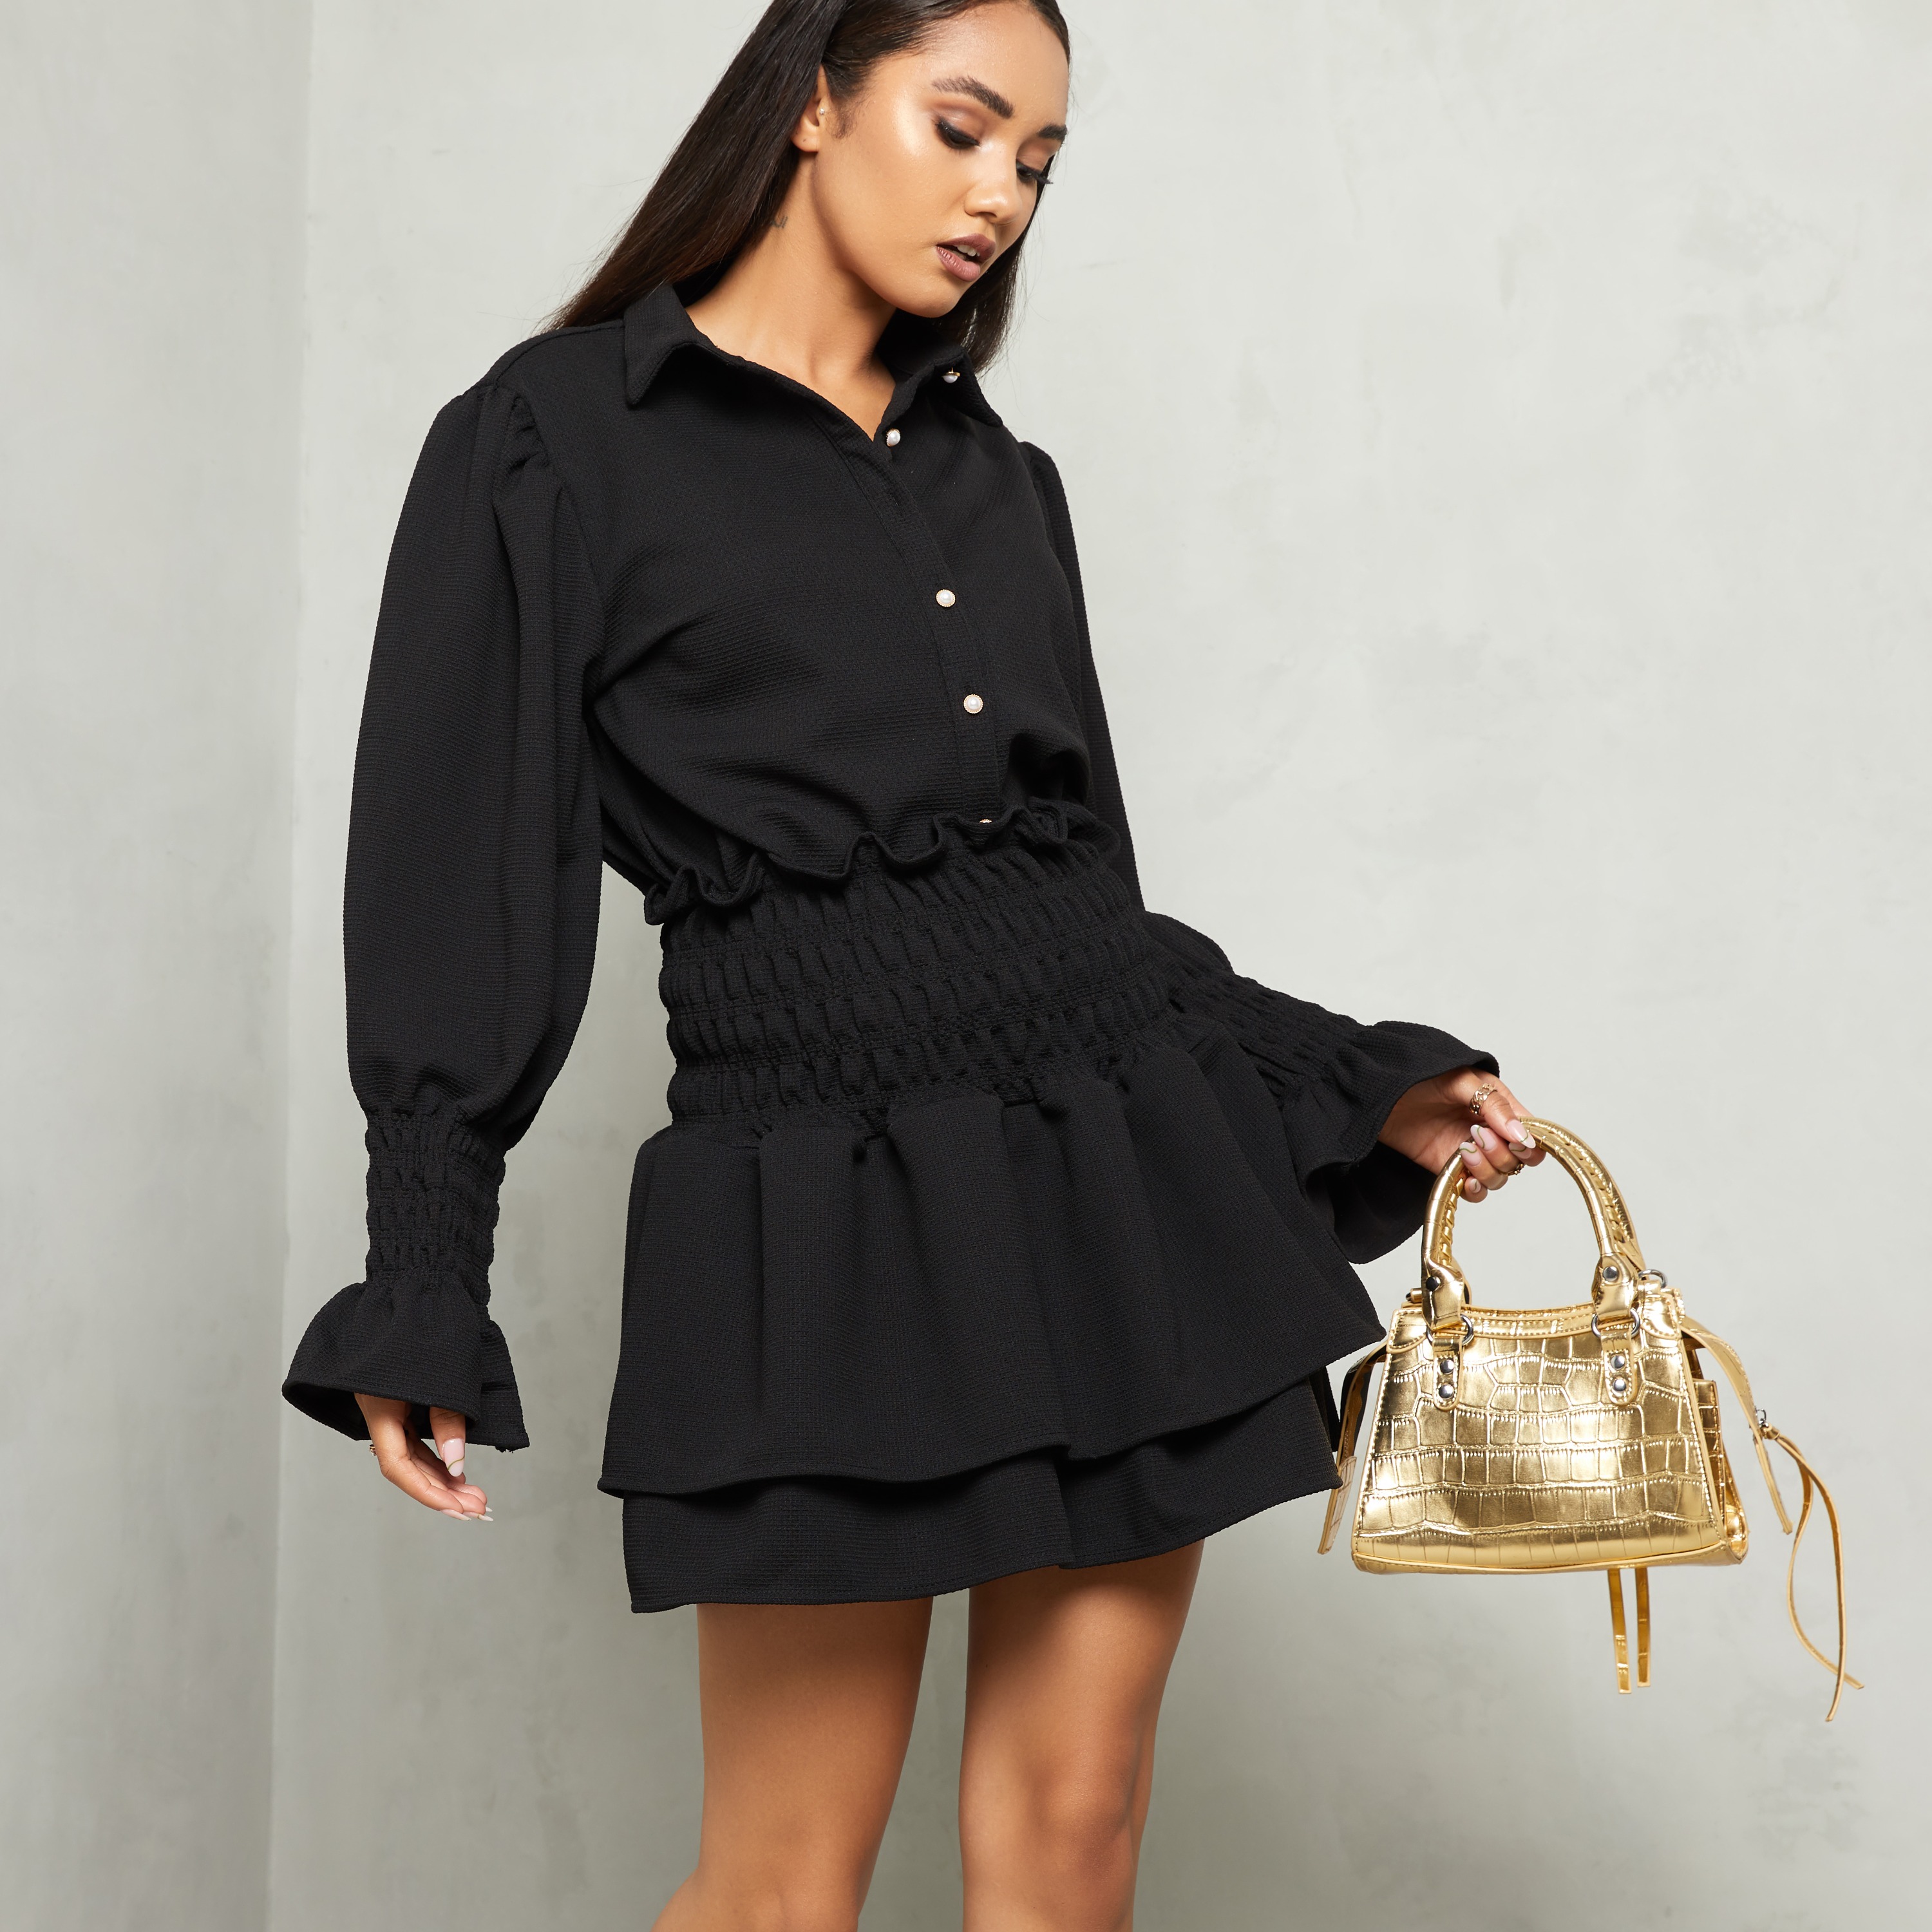 Ruffled Blouse And Mini Skirt Co Ord Set In Black UK Medium/Large M/L, Black